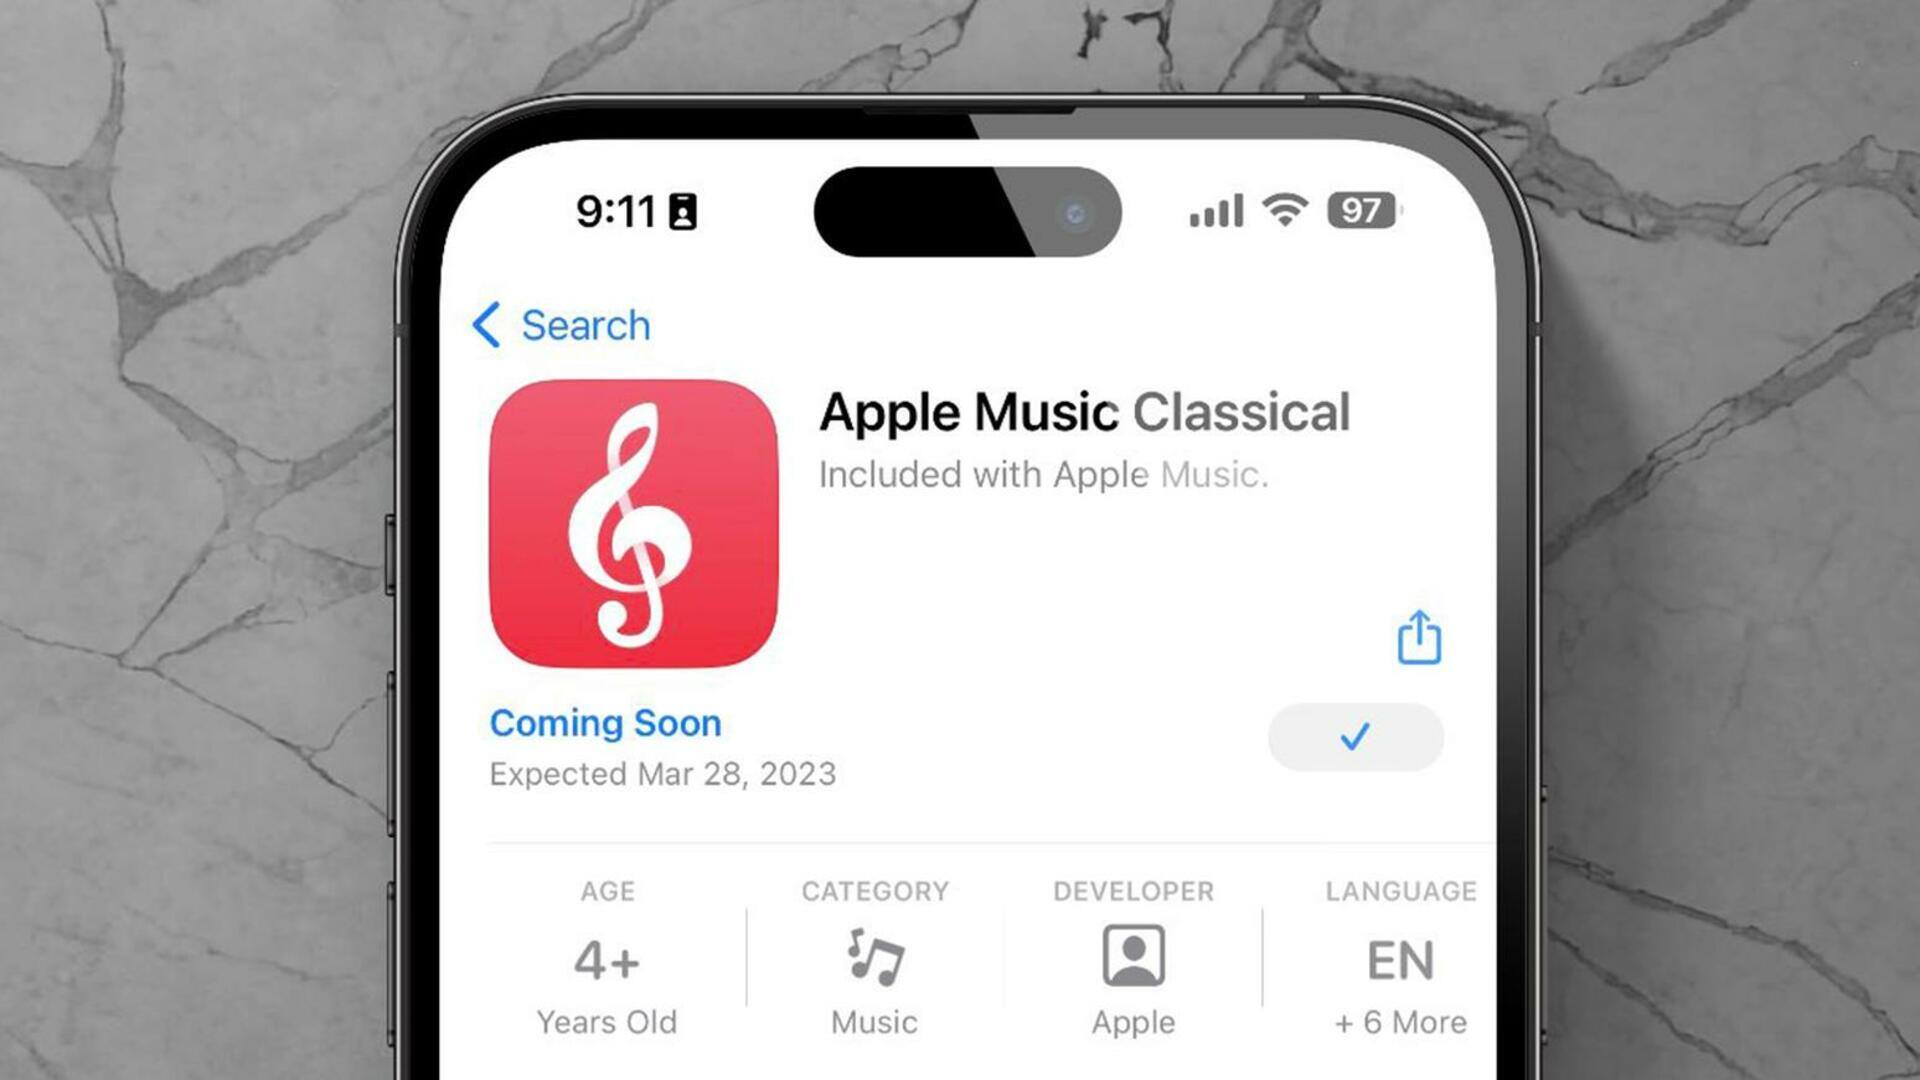 ऐपल म्यूजिक क्लासिकल अब ऐप स्टोर से डाउनलोड करने के लिए उपलब्ध, जानिए विशेषता